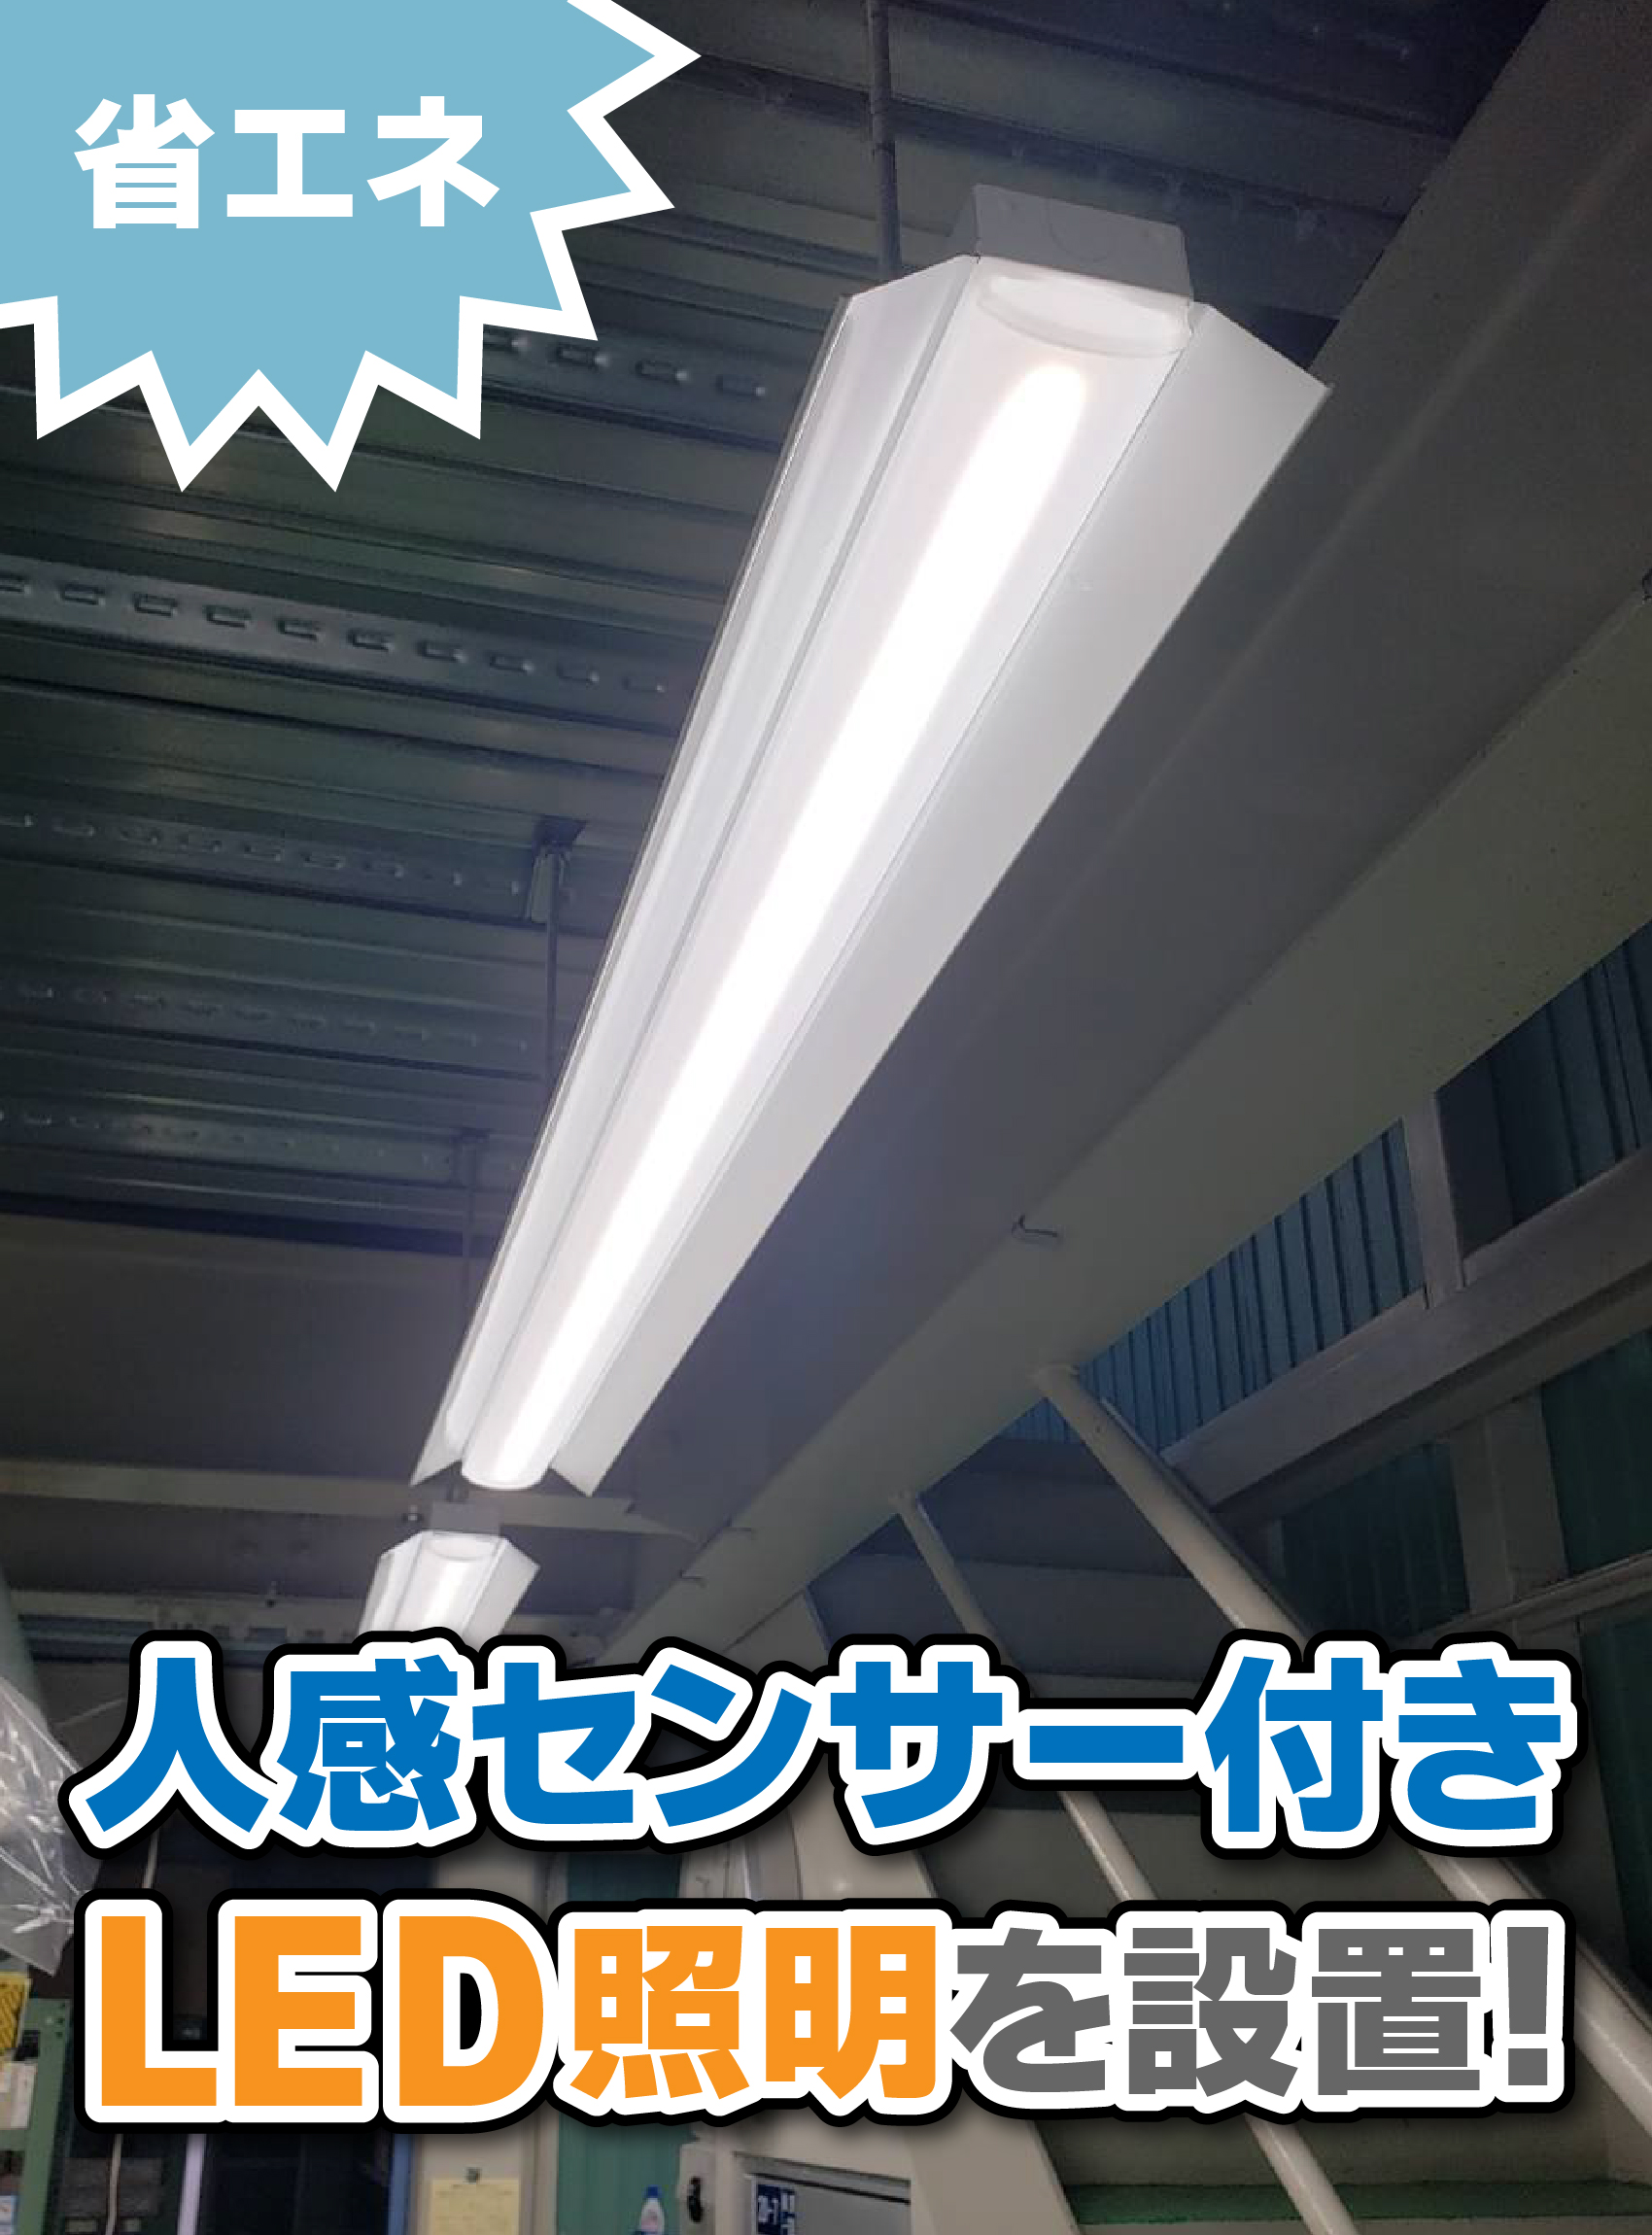 株式会社富森様【人感センサー付LED灯の設置】